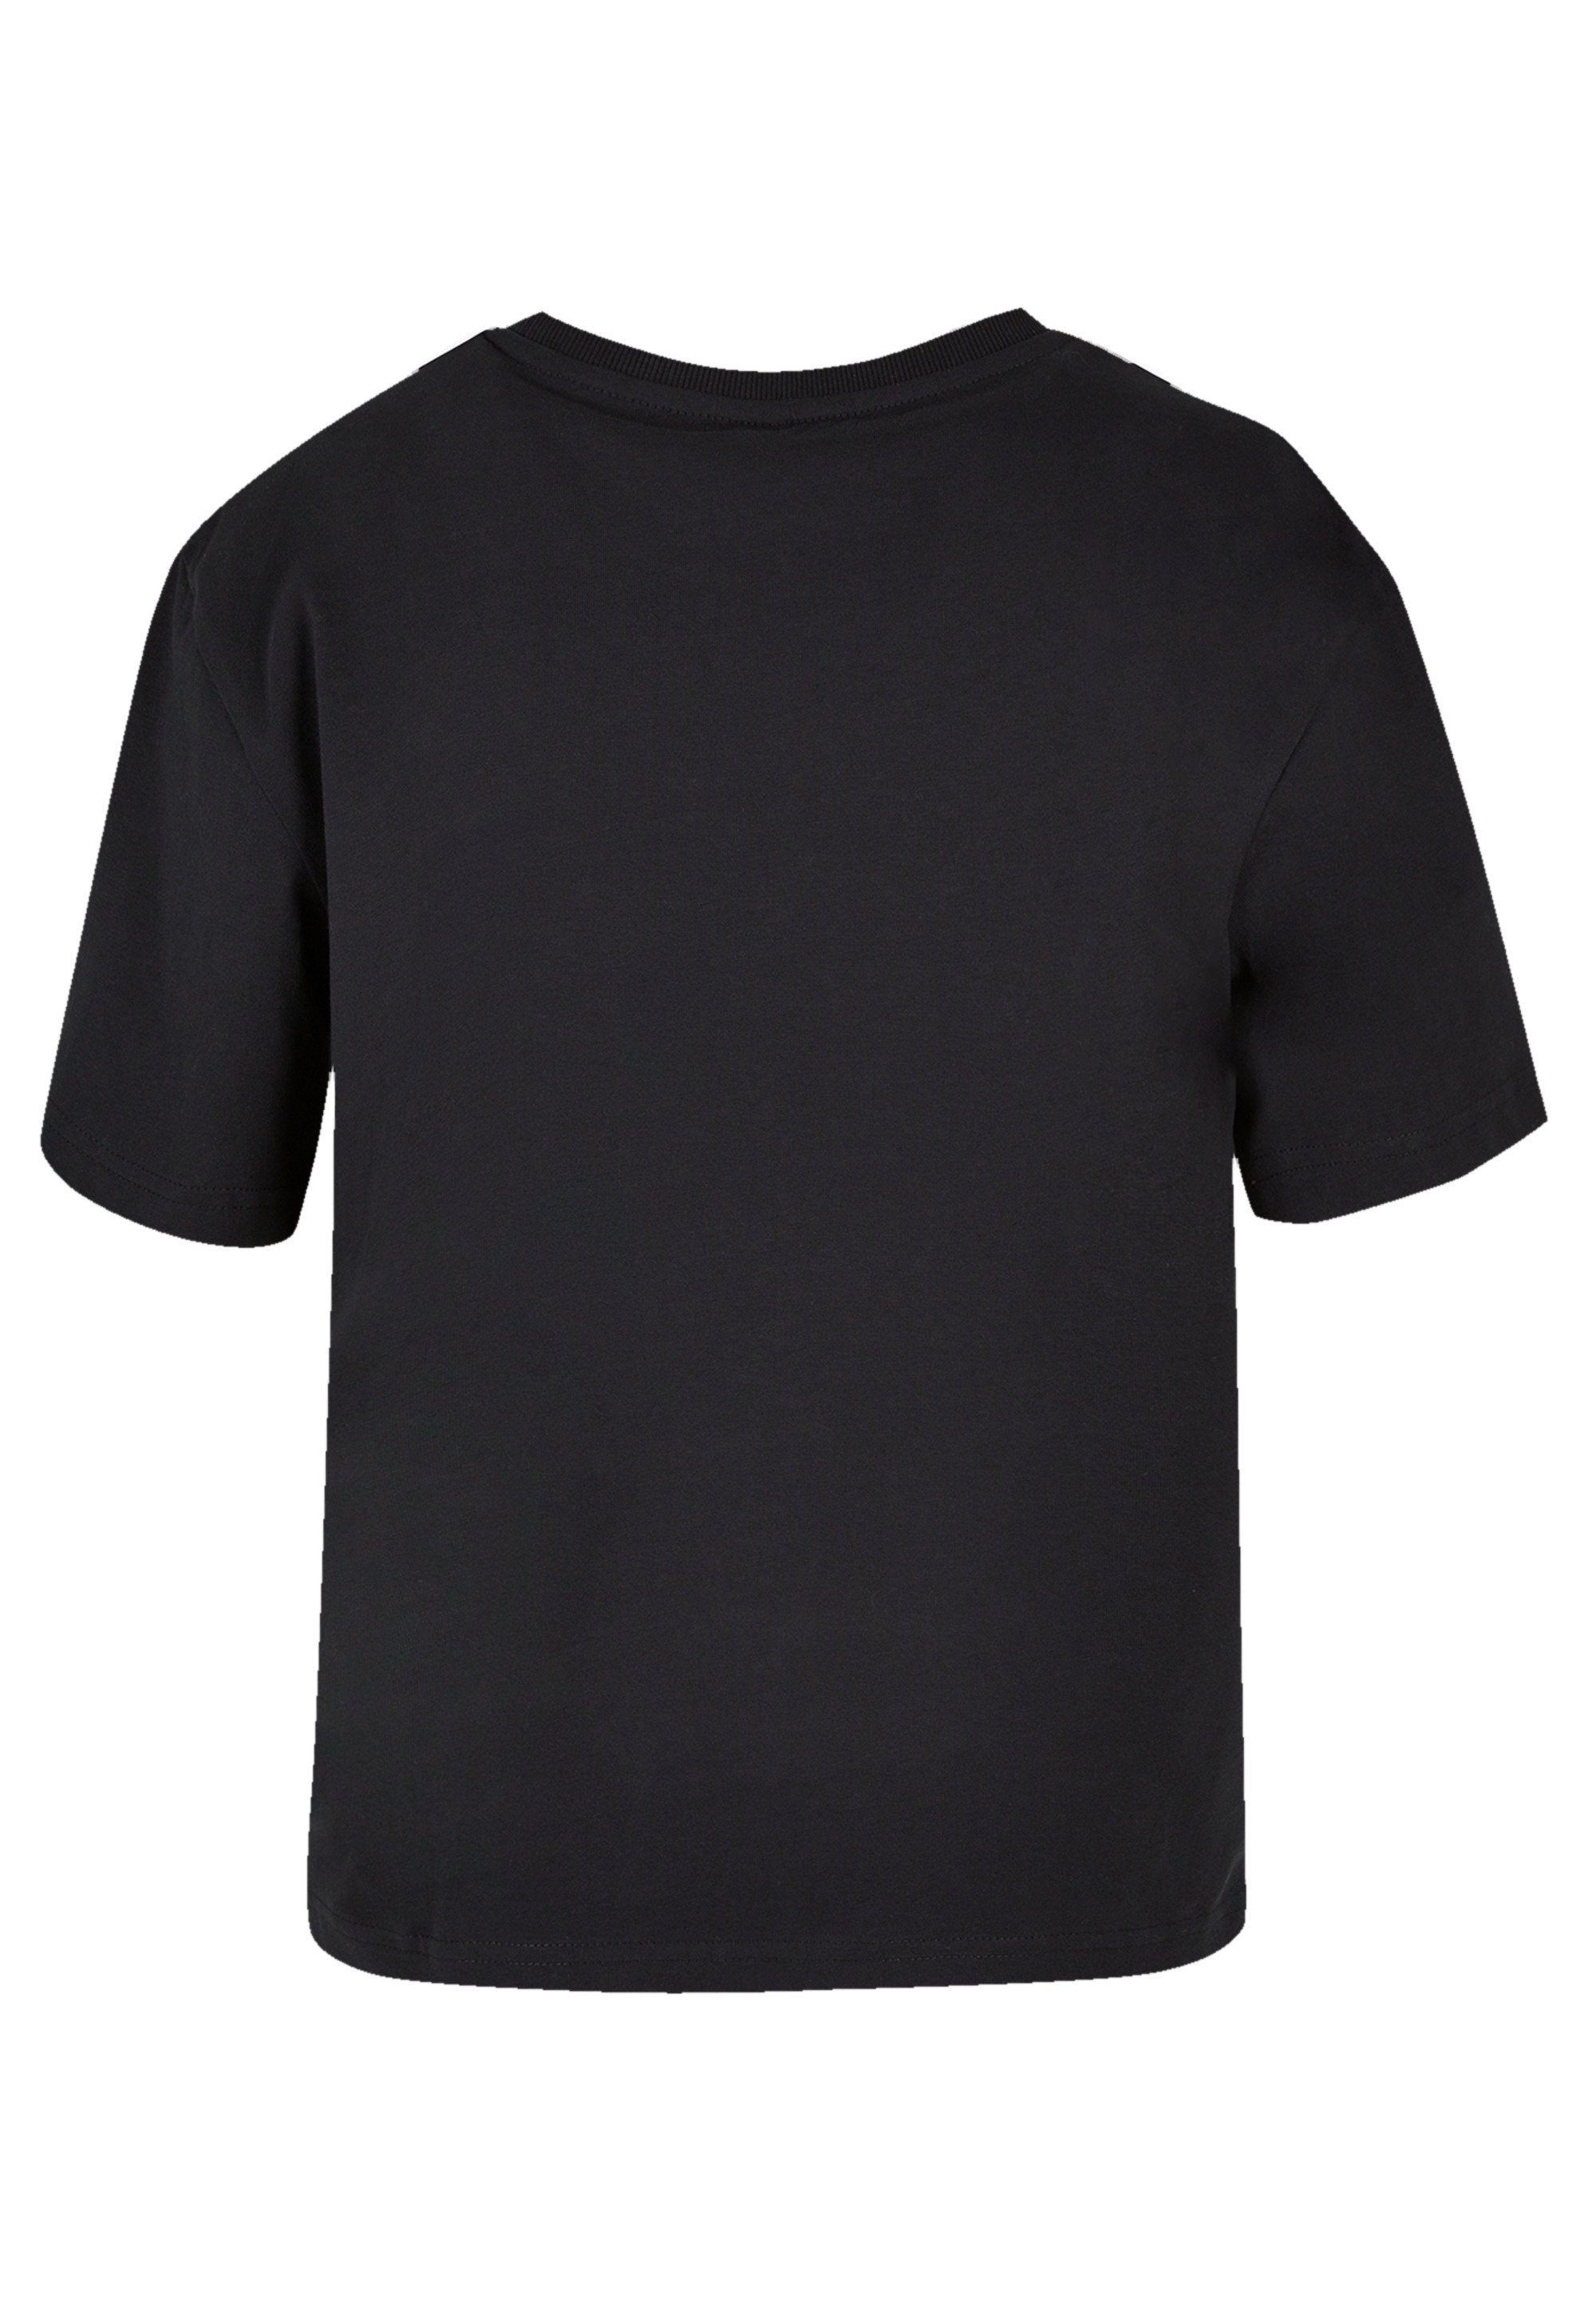 F4NT4STIC T-Shirt Disney Mulan Bold Spirit Premium Qualität, Komfortabel  und vielseitig kombinierbar